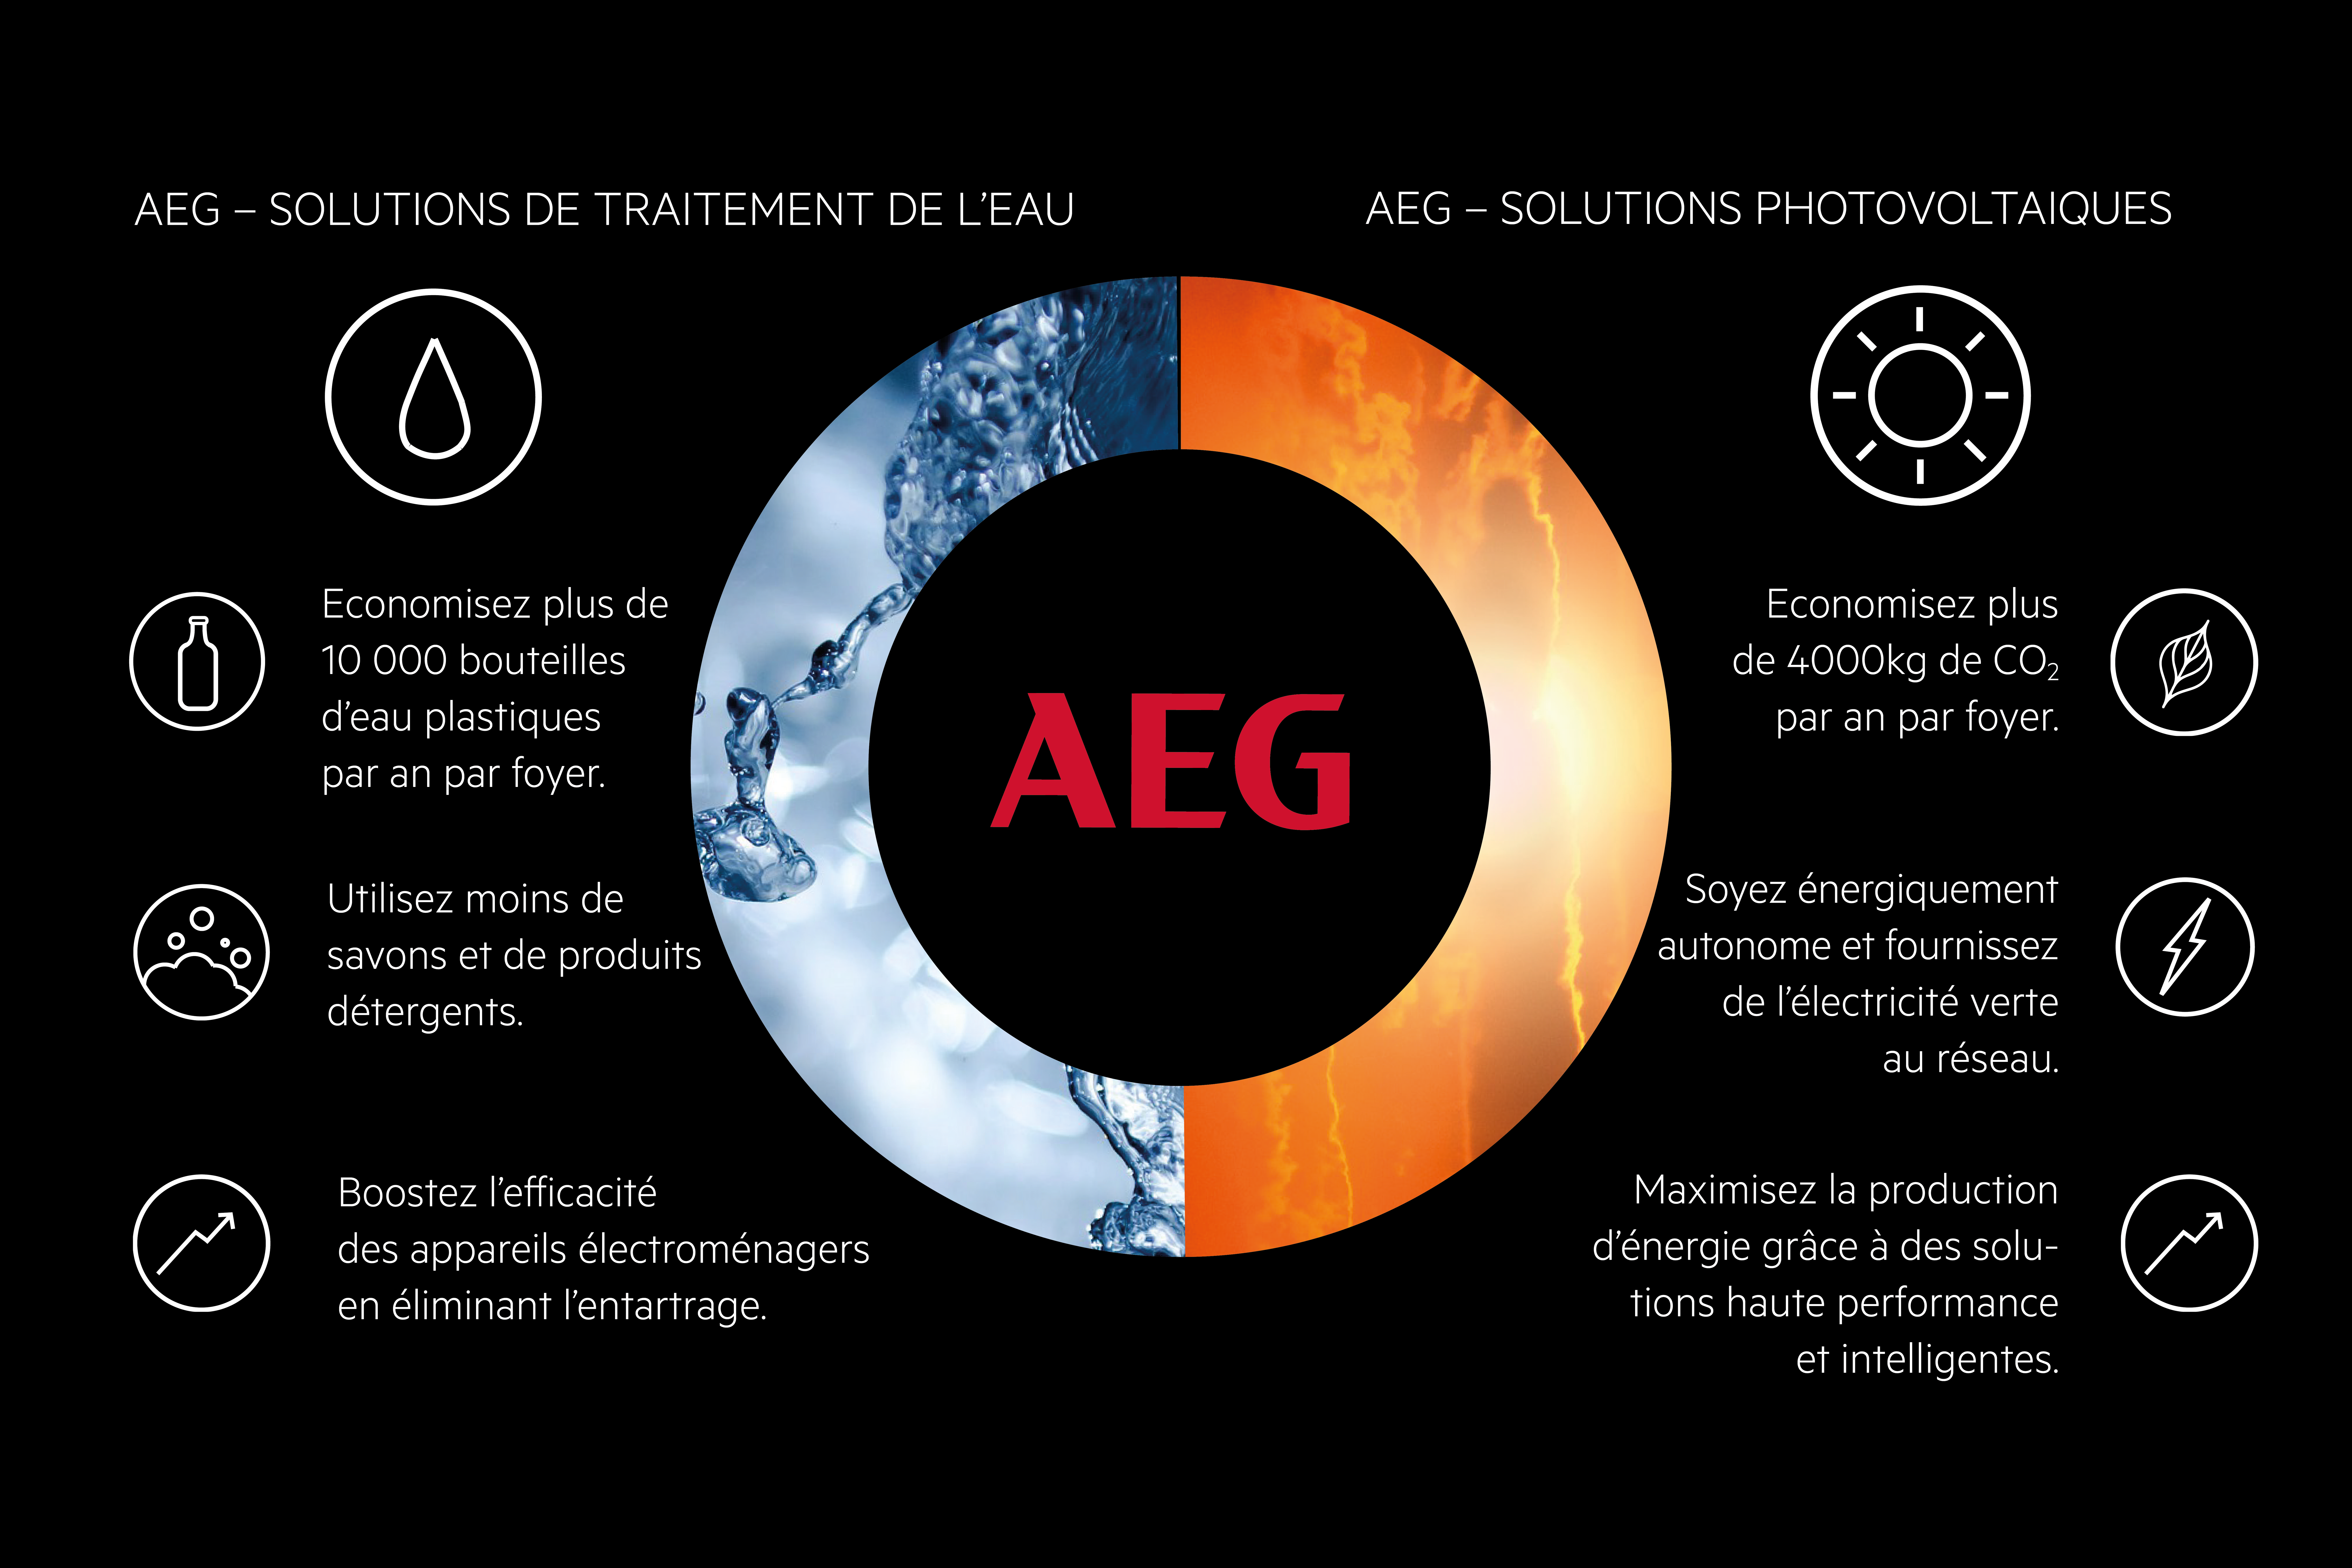 AEG des solutions ecoresponsables